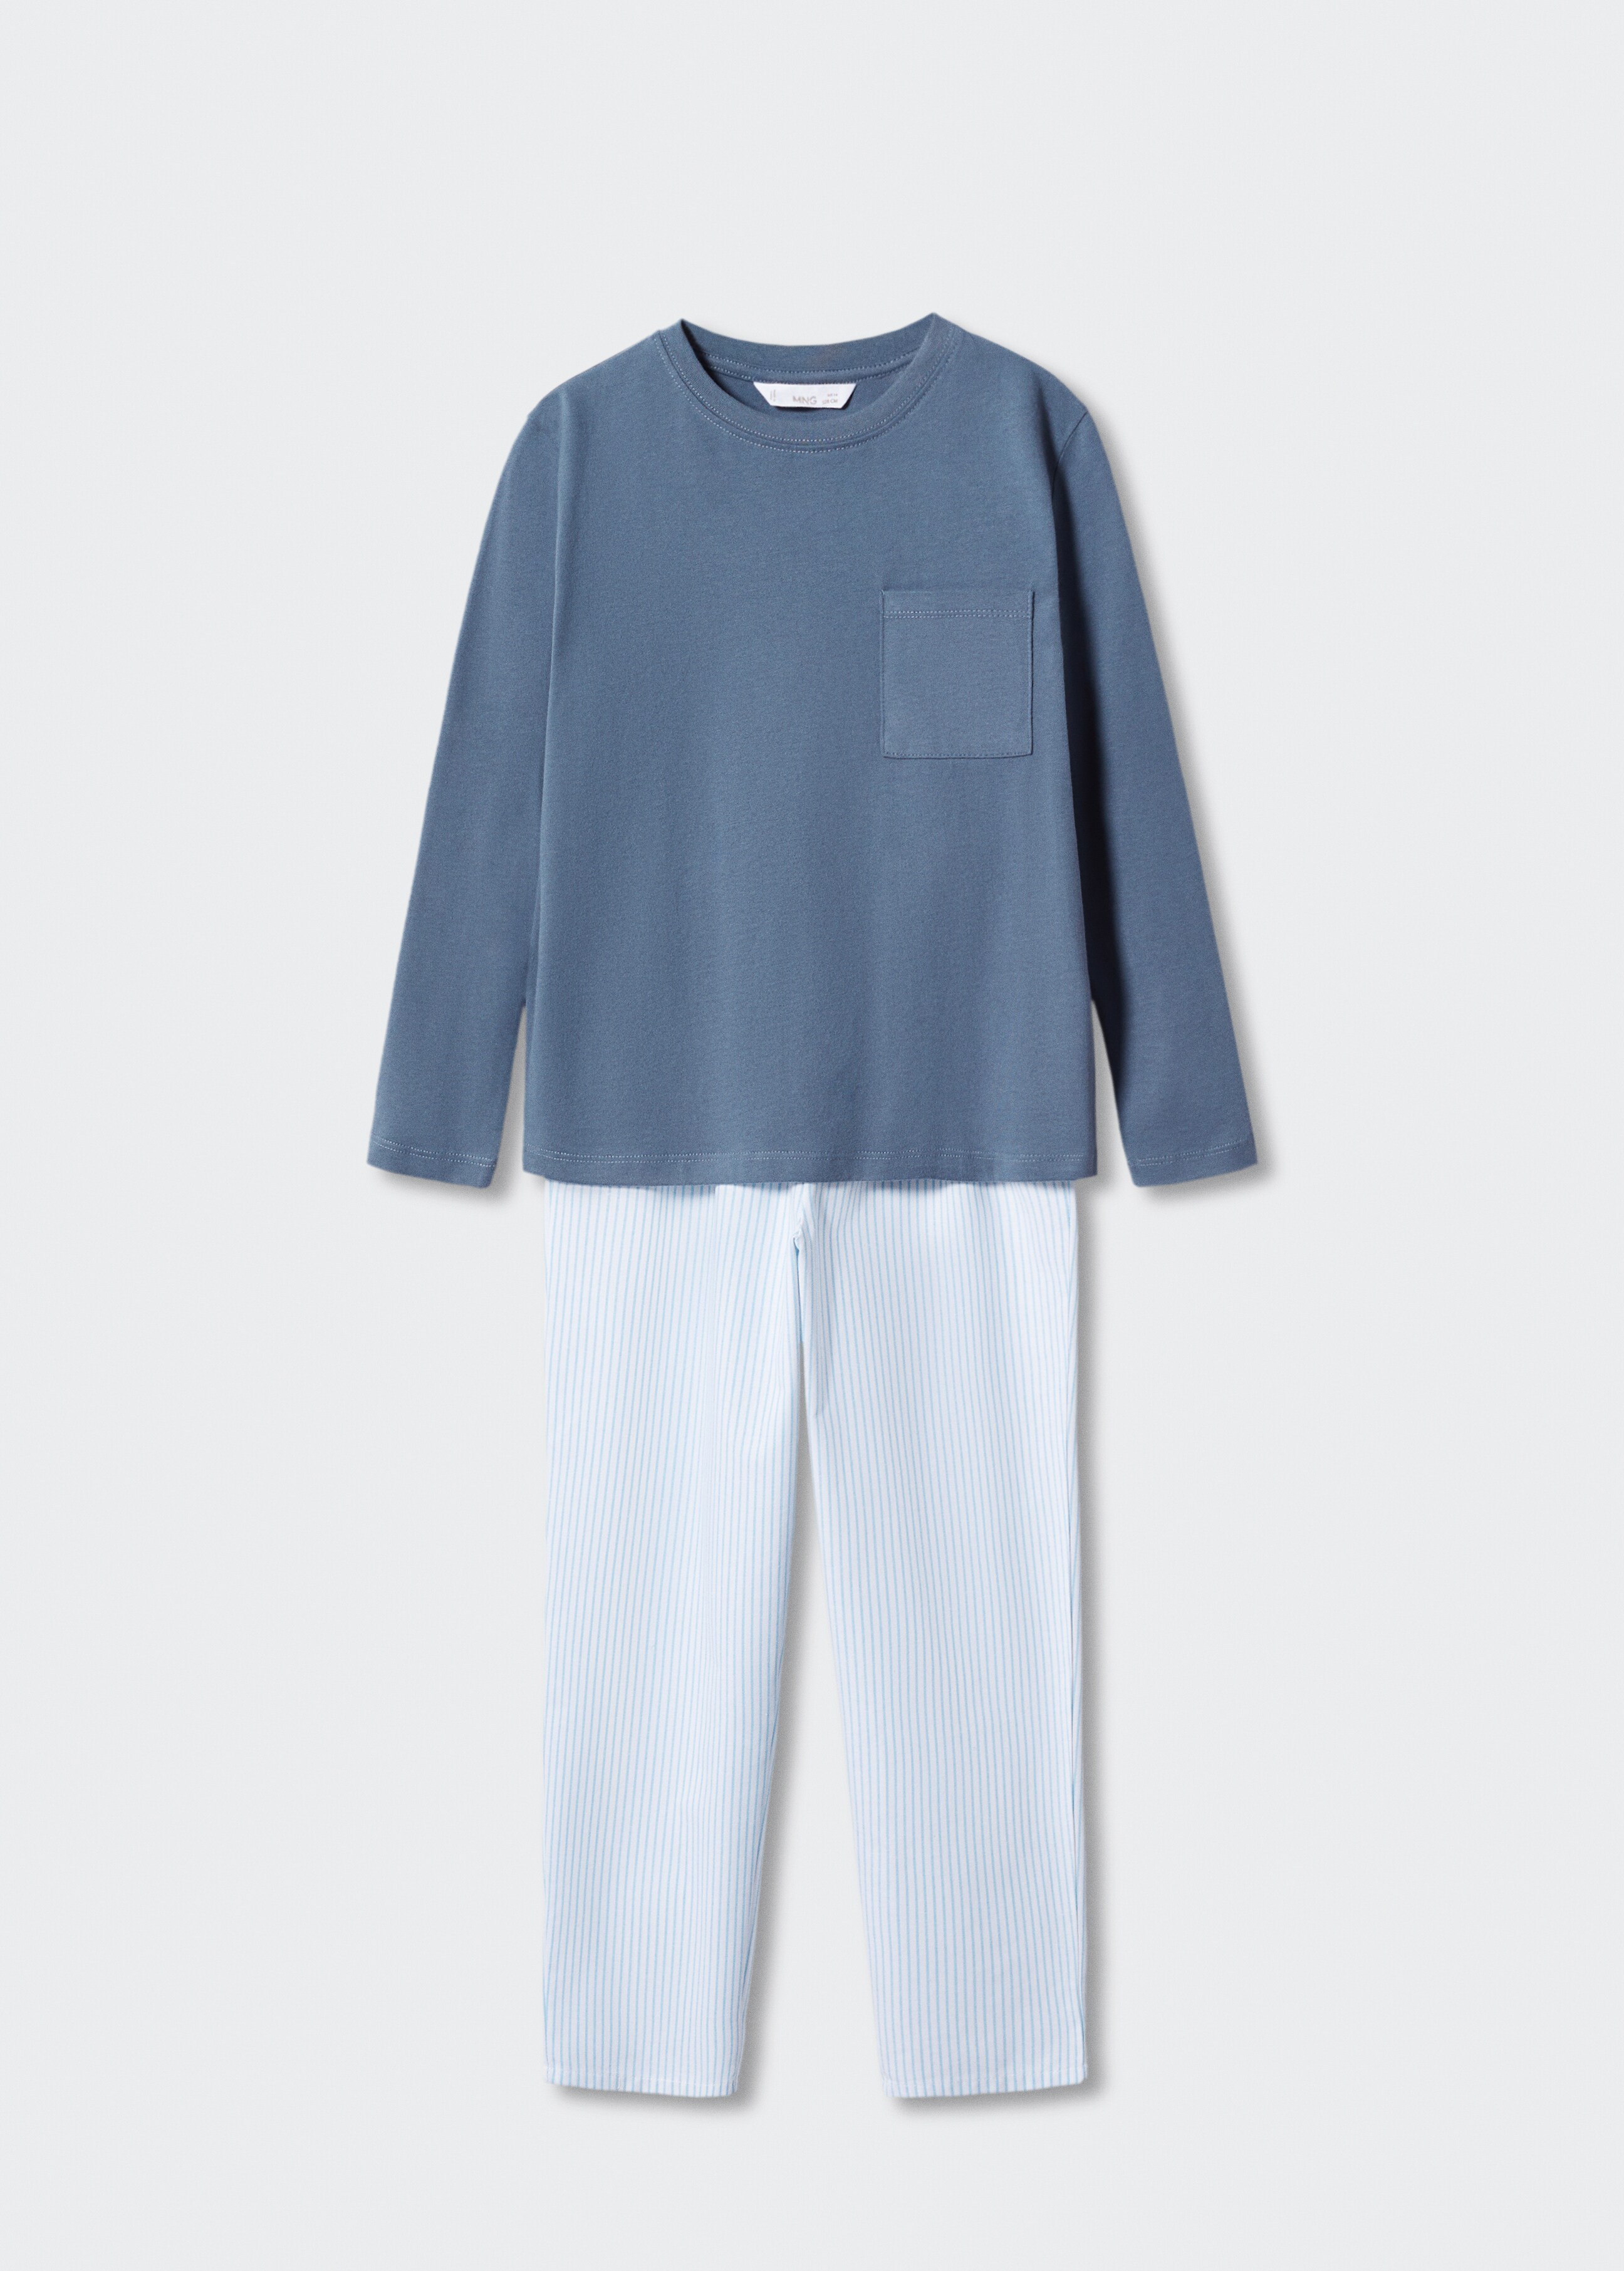 Pijama largo algodón - Artículo sin modelo